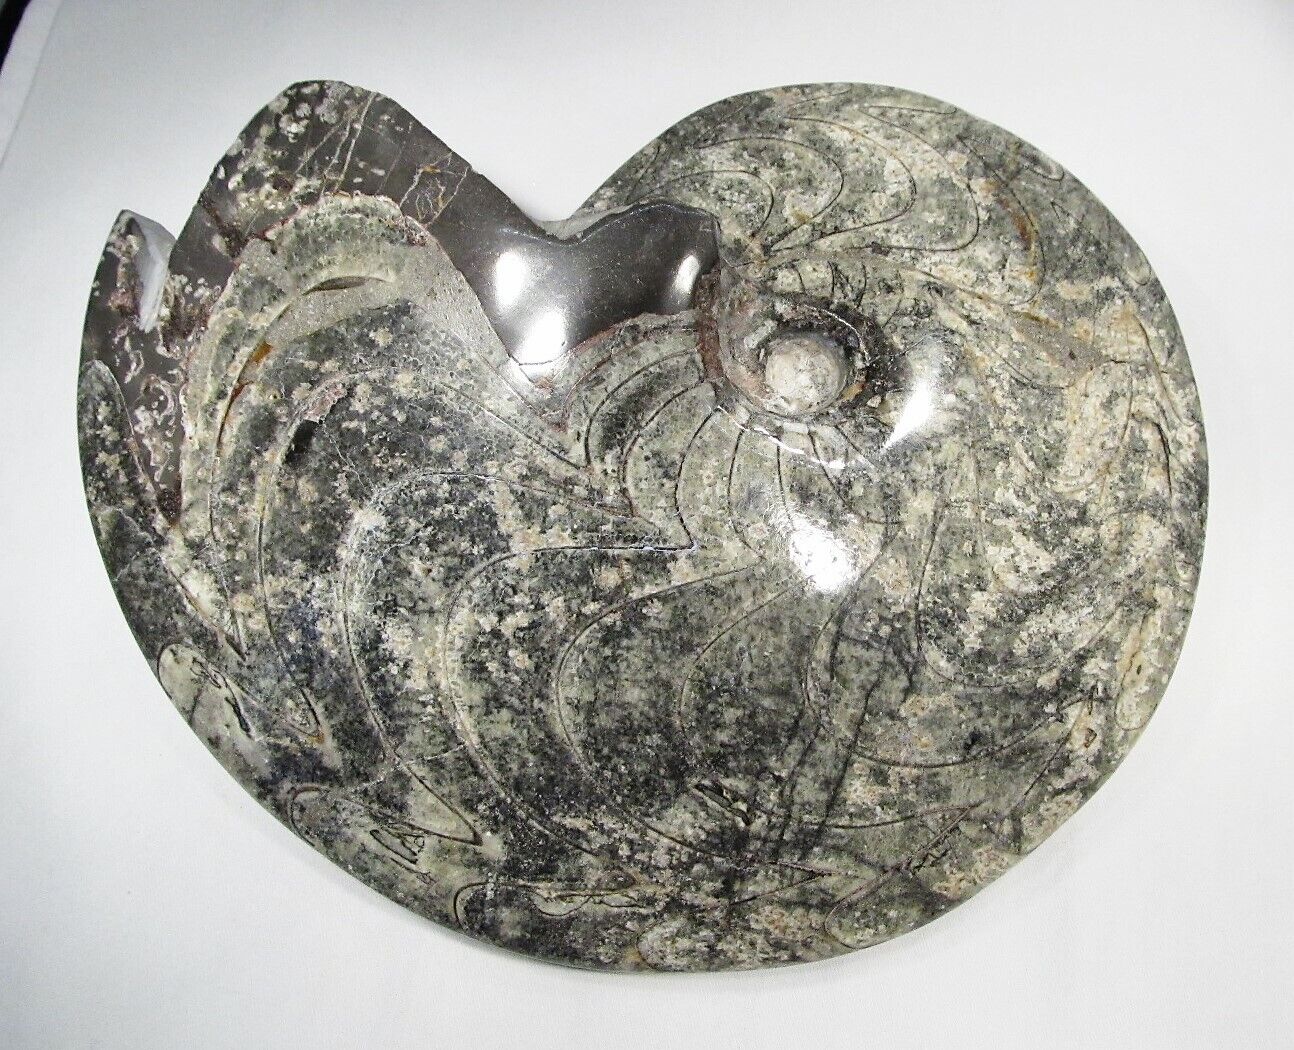 HUGE 8lb Ammonite Fossil Specimen Beautiful C2686